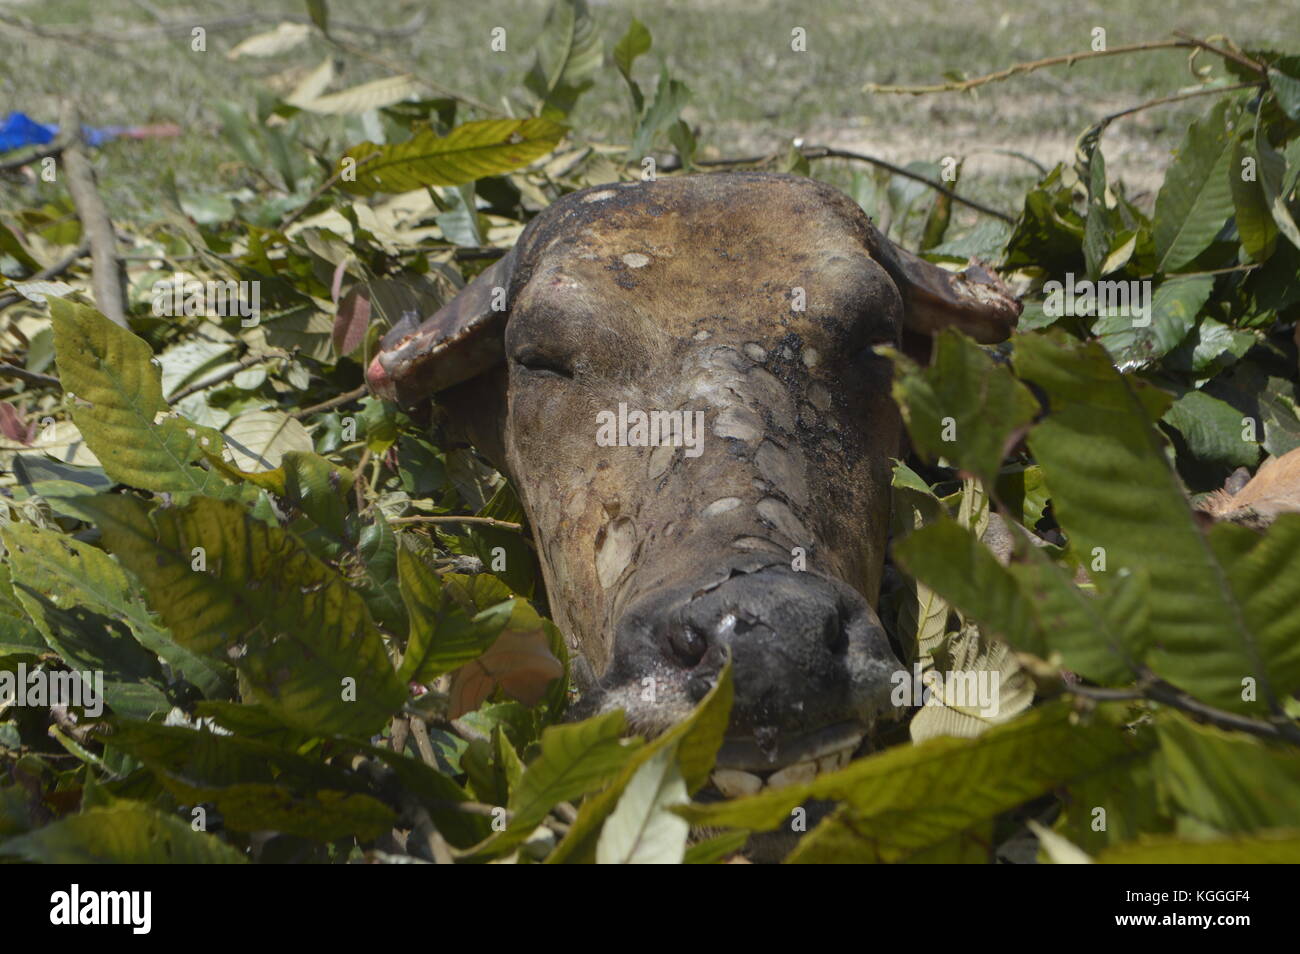 Schlachtung von Wasserbüffeln in einem kleinen nepalesischen Dorf auf humane Weise. Getötet mit 3 Schlägen der unscharfen Seite einer Axt auf dem Kopf. Alle Männer helfen. Stockfoto